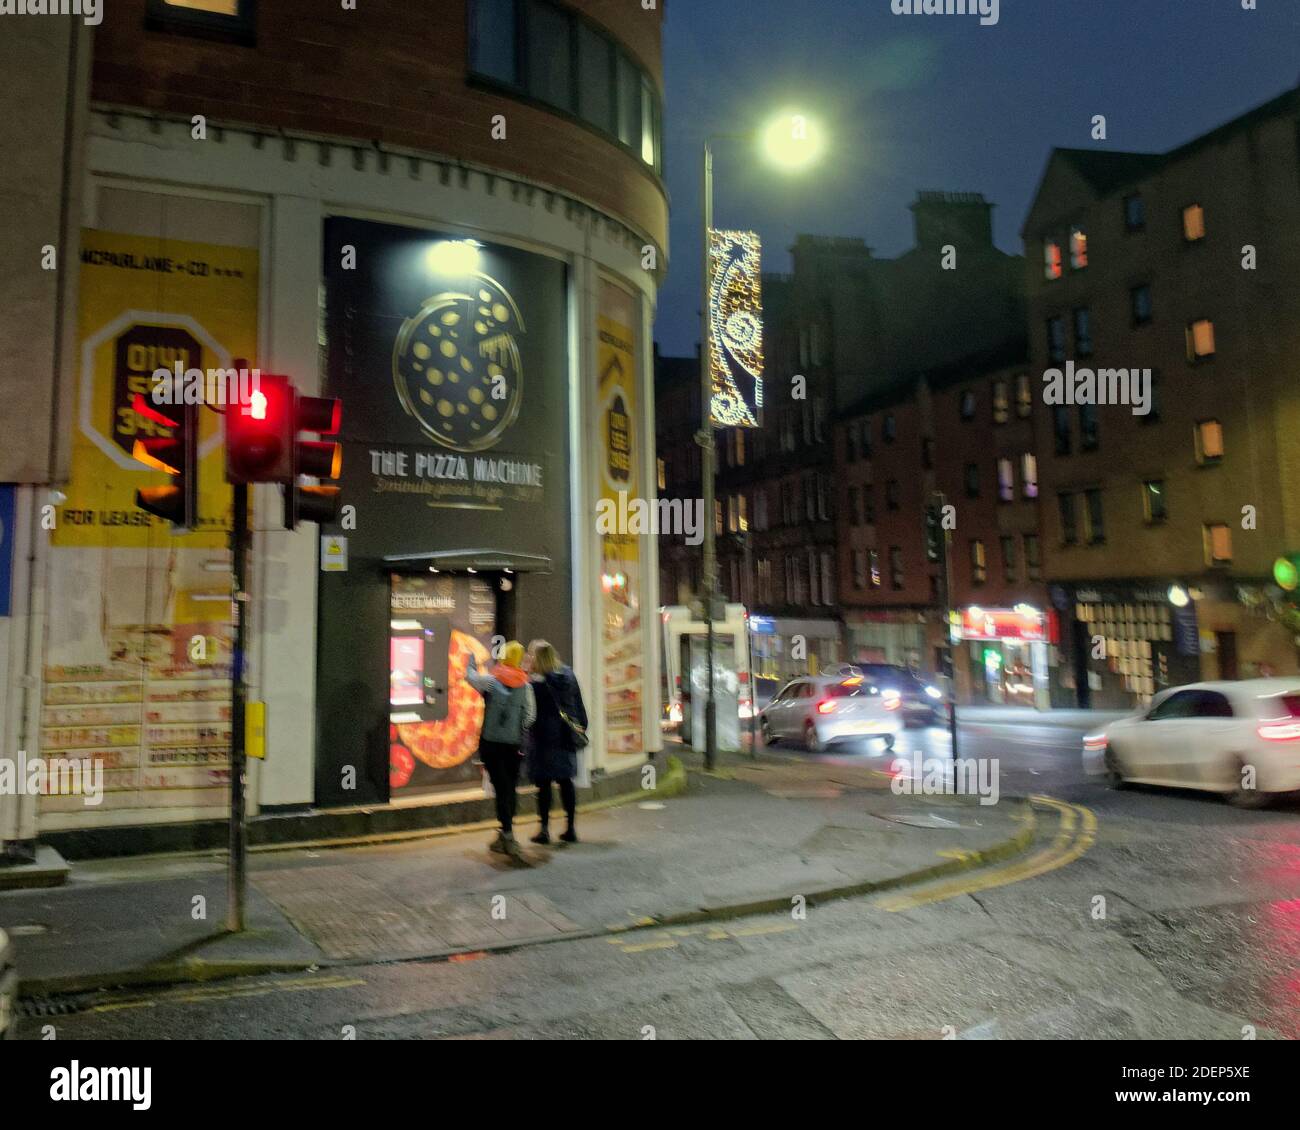 Glasgow, Écosse, Royaume-Uni, 1er décembre 2020 : le premier distributeur de pizzas d'Écosse est apparu sur un endroit vacant dans la rue haute, alors que la réputation culinaire de la ville atteint un autre niveau bas, mais lancé pendant l'accès restreint de Covid. Attirer l'attention, cela semble un succès. Crédit : Gerard Ferry/Alay Live News Banque D'Images